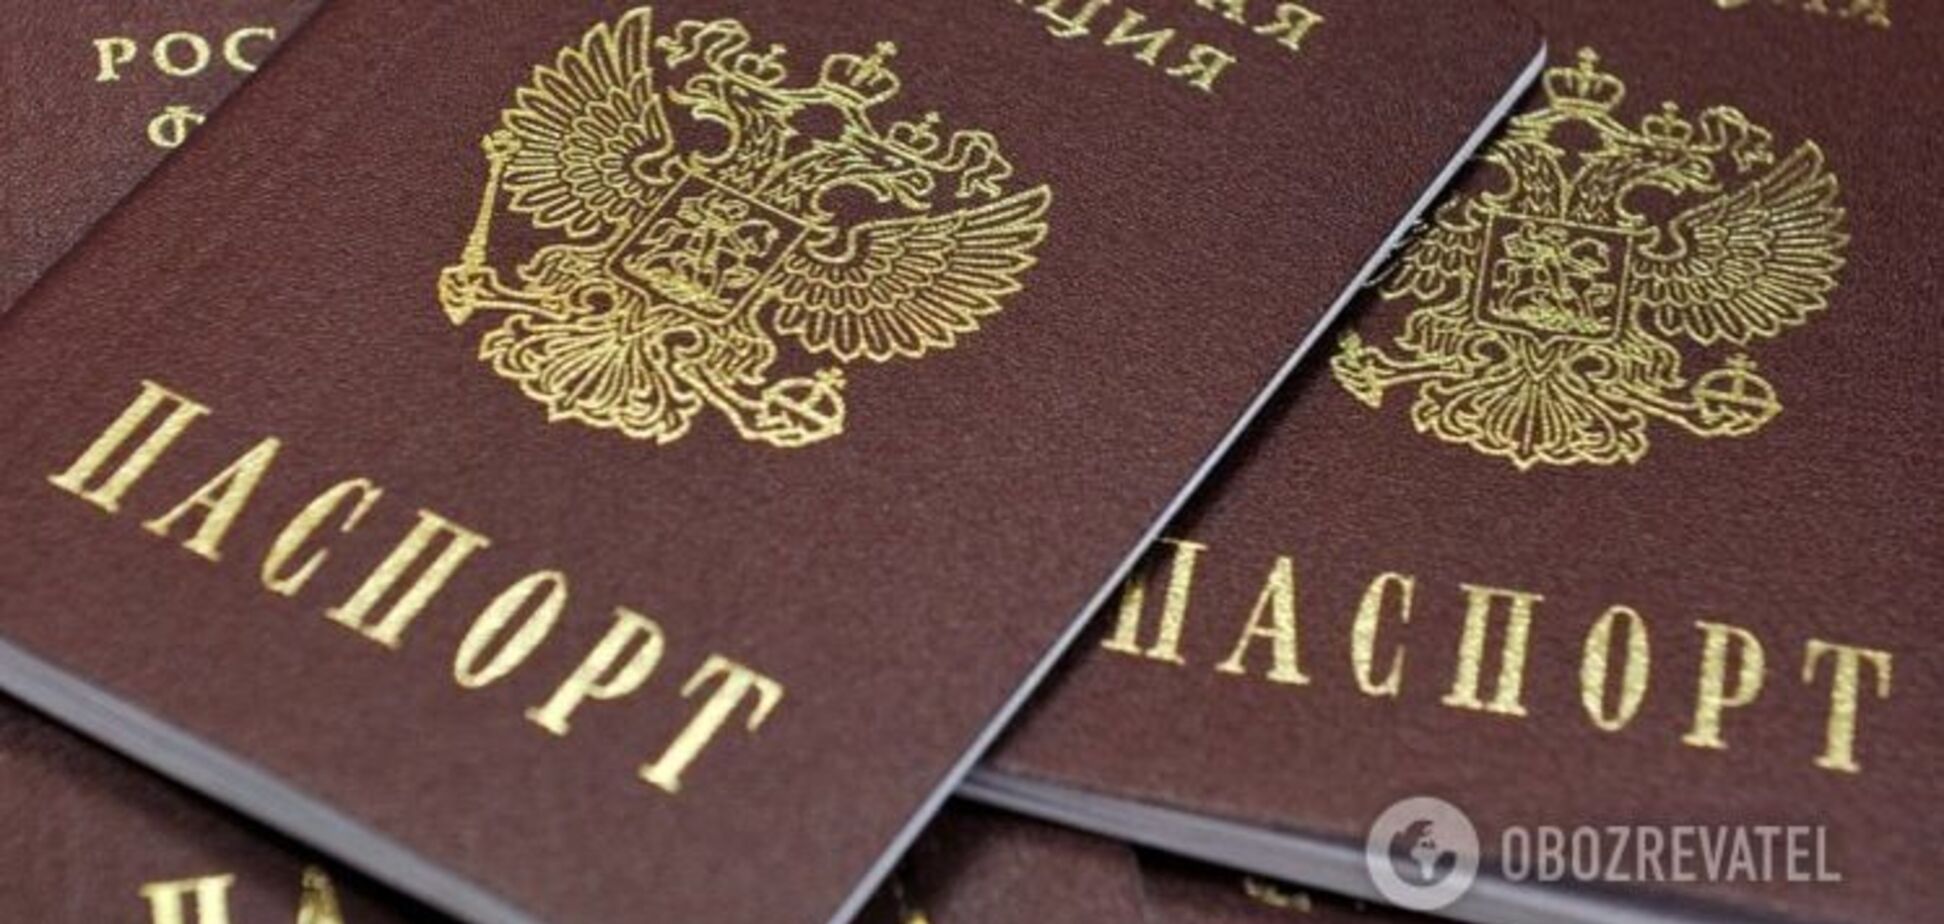 Паспорта России на Донбассе: Кабмин объяснил, как будет определять предателей